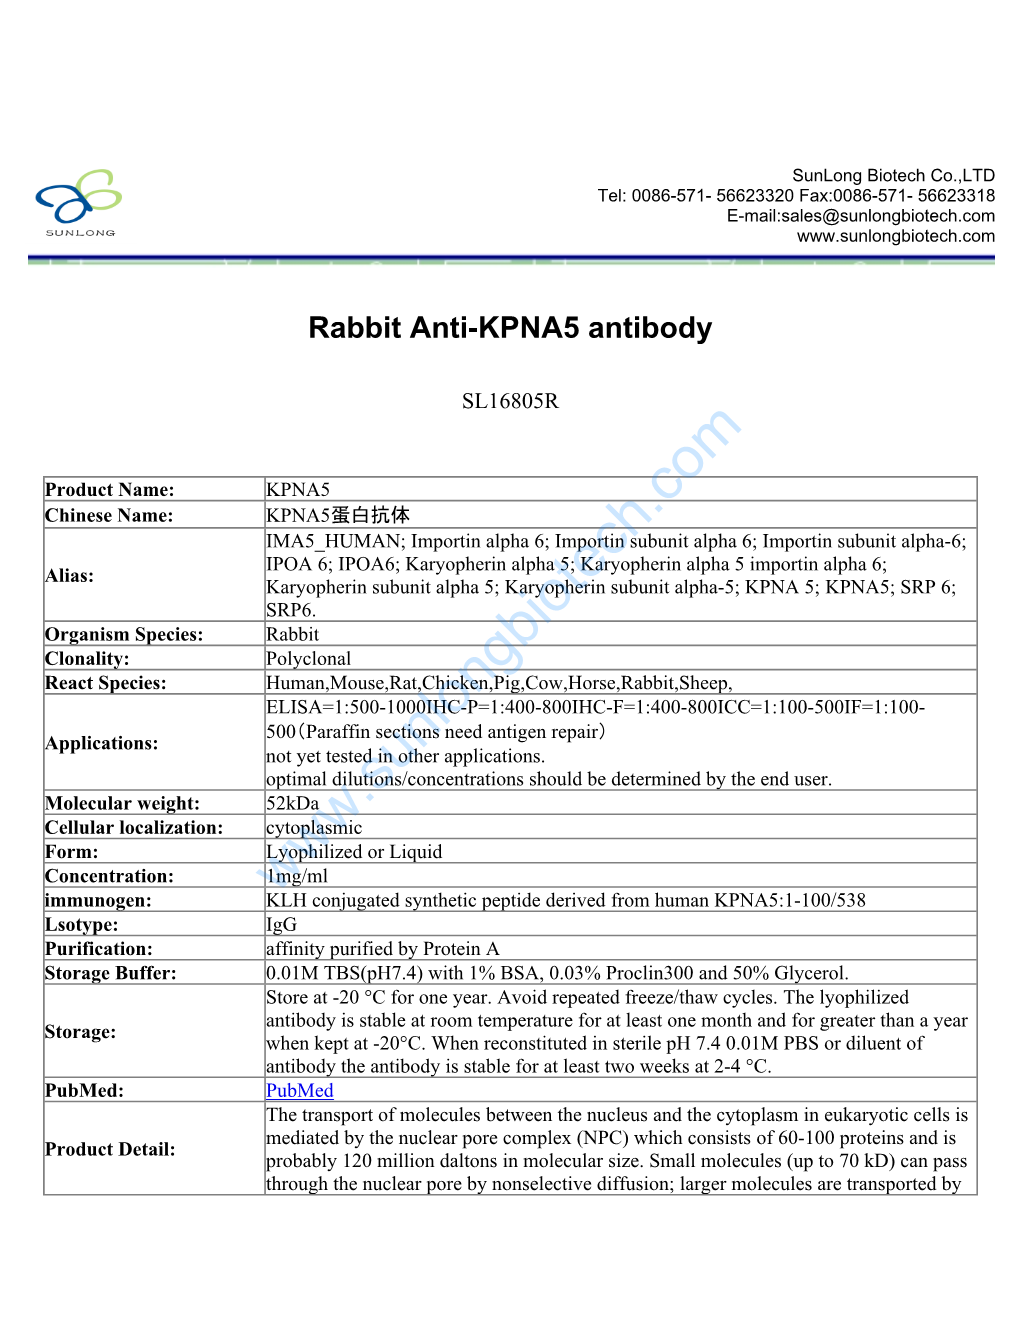 Rabbit Anti-KPNA5 Antibody-SL16805R